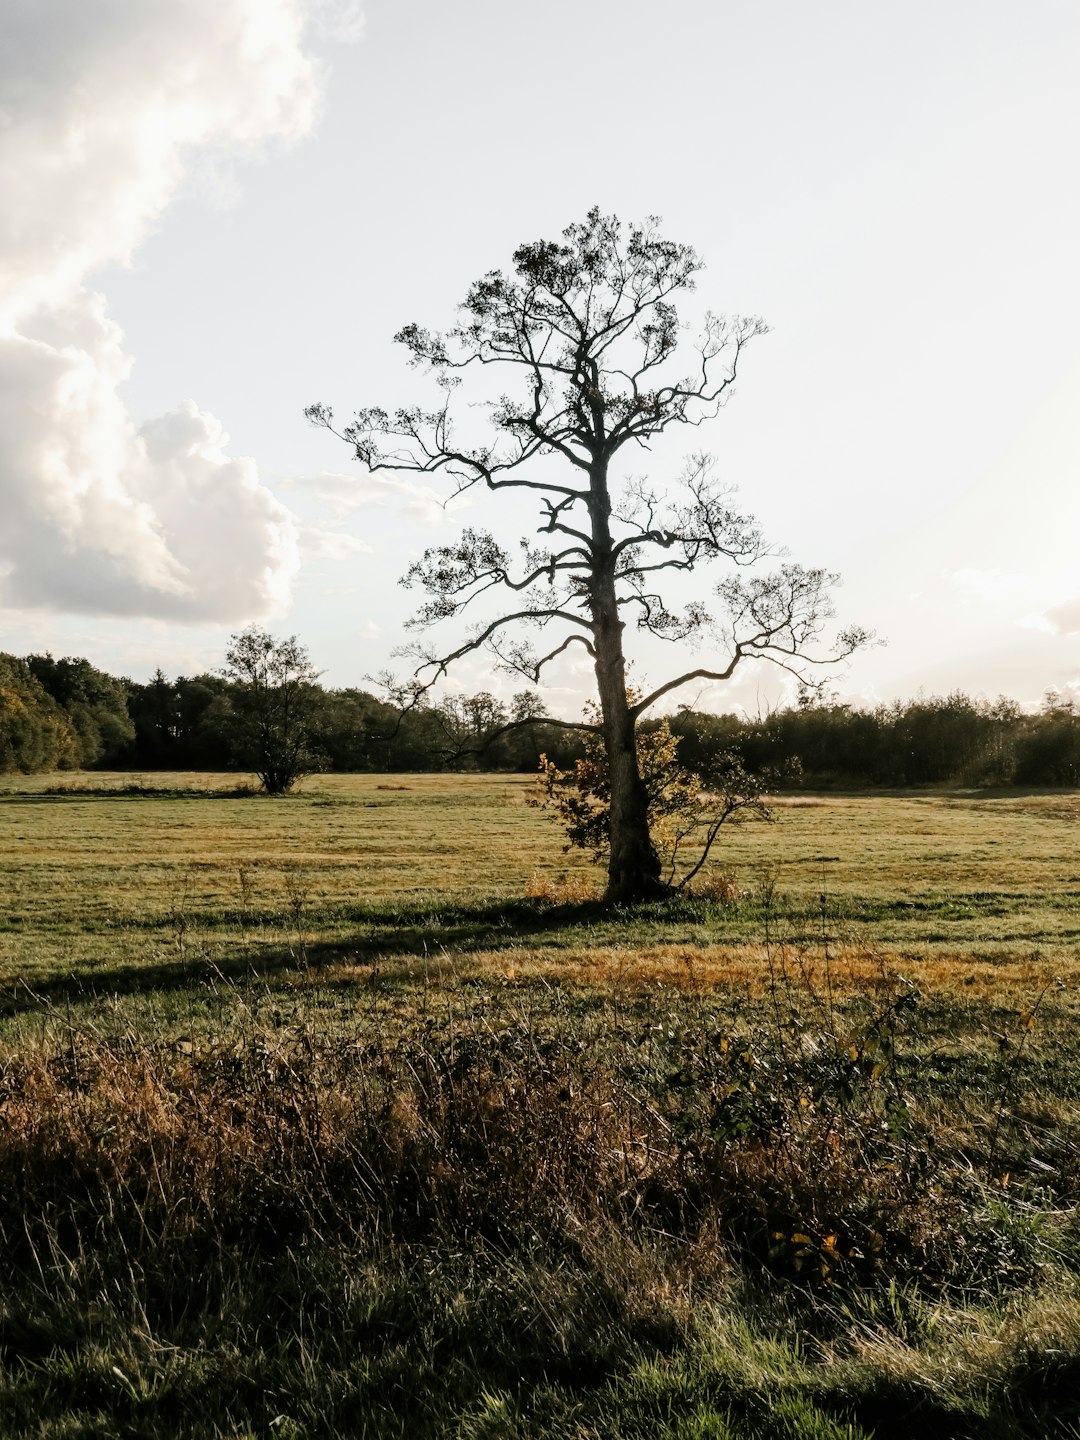 tree on landscape field